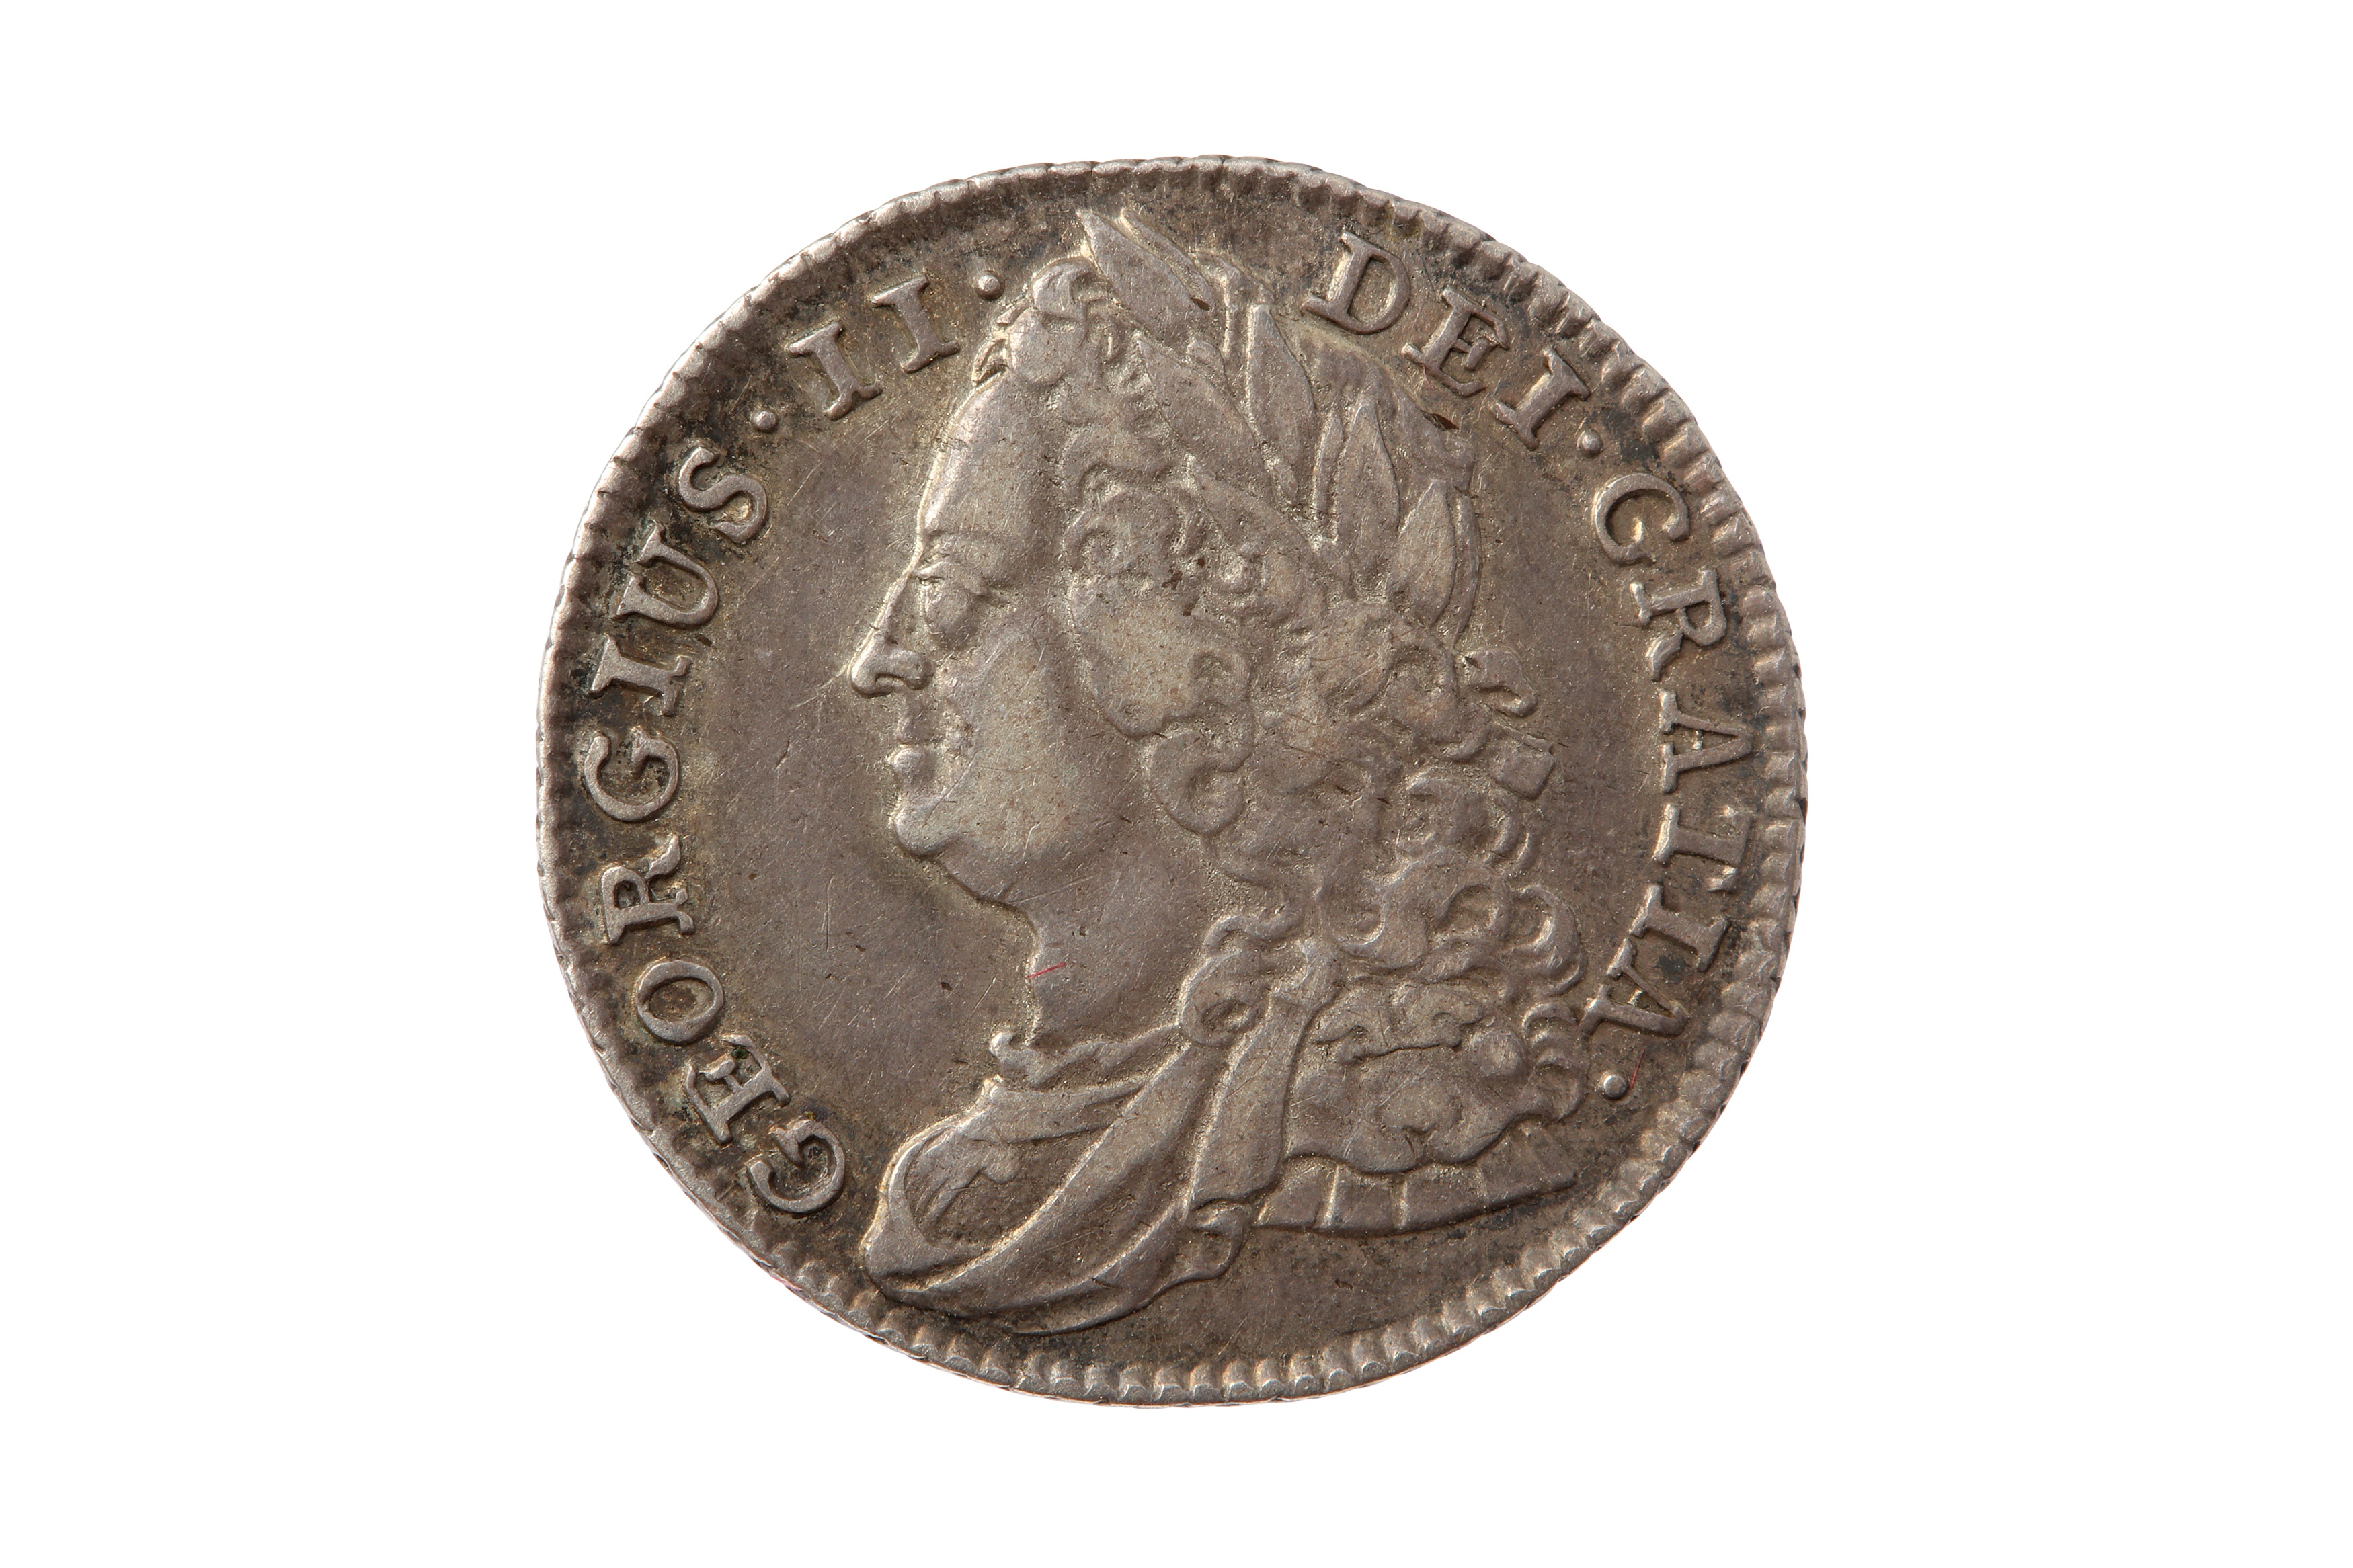 GEORGE II (1727 - 1760), 1743 SIXPENCE.